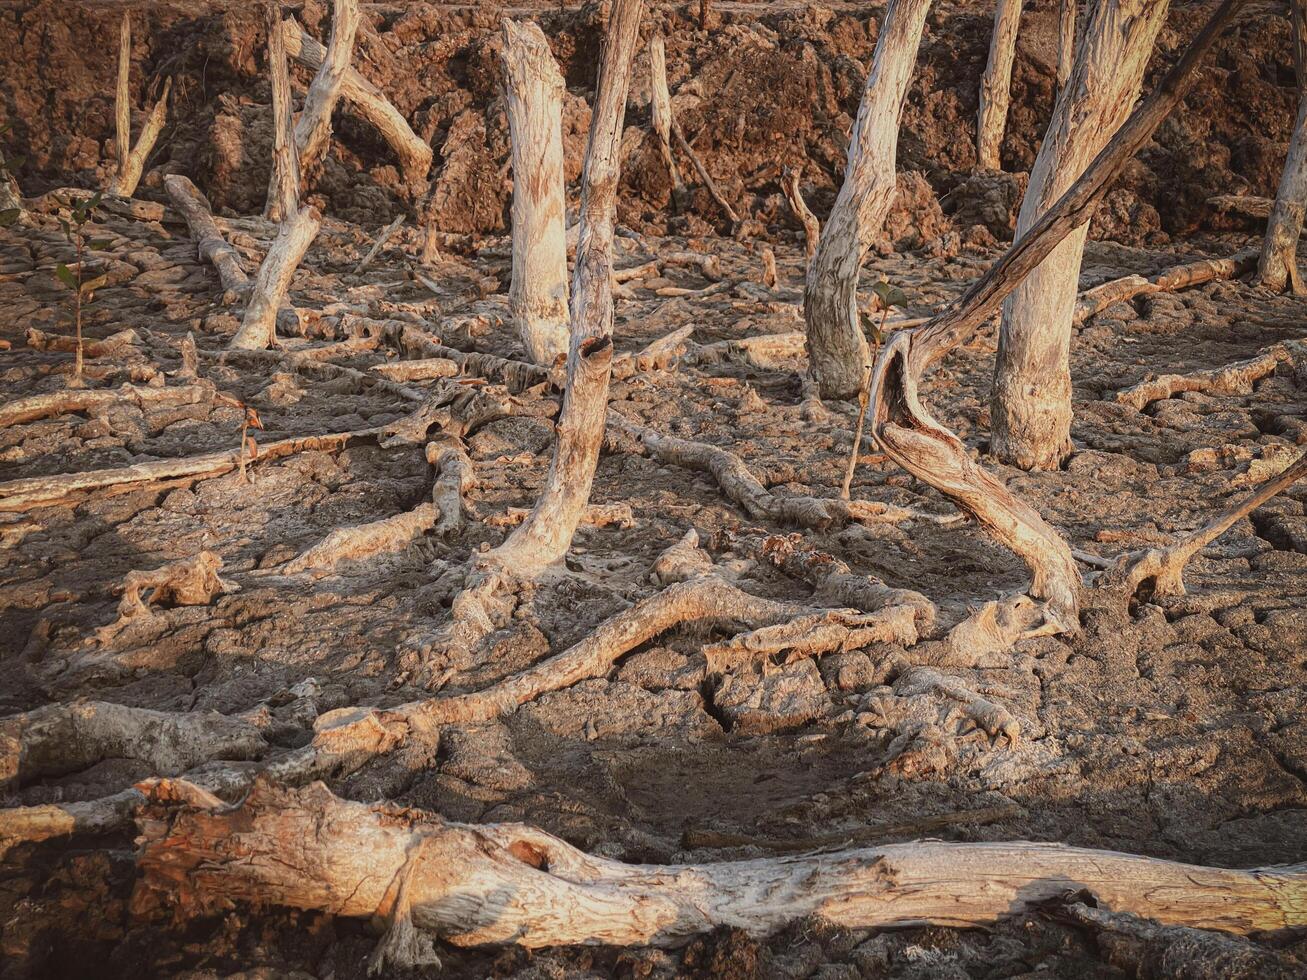 verwoesting mangrove Woud landschap, verwoesting mangrove Woud is een ecosysteem dat heeft geweest ernstig gedegradeerd of geëlimineerd zo net zo leefgebied, en vervuiling, nemen zorg van de mangrove Woud. foto